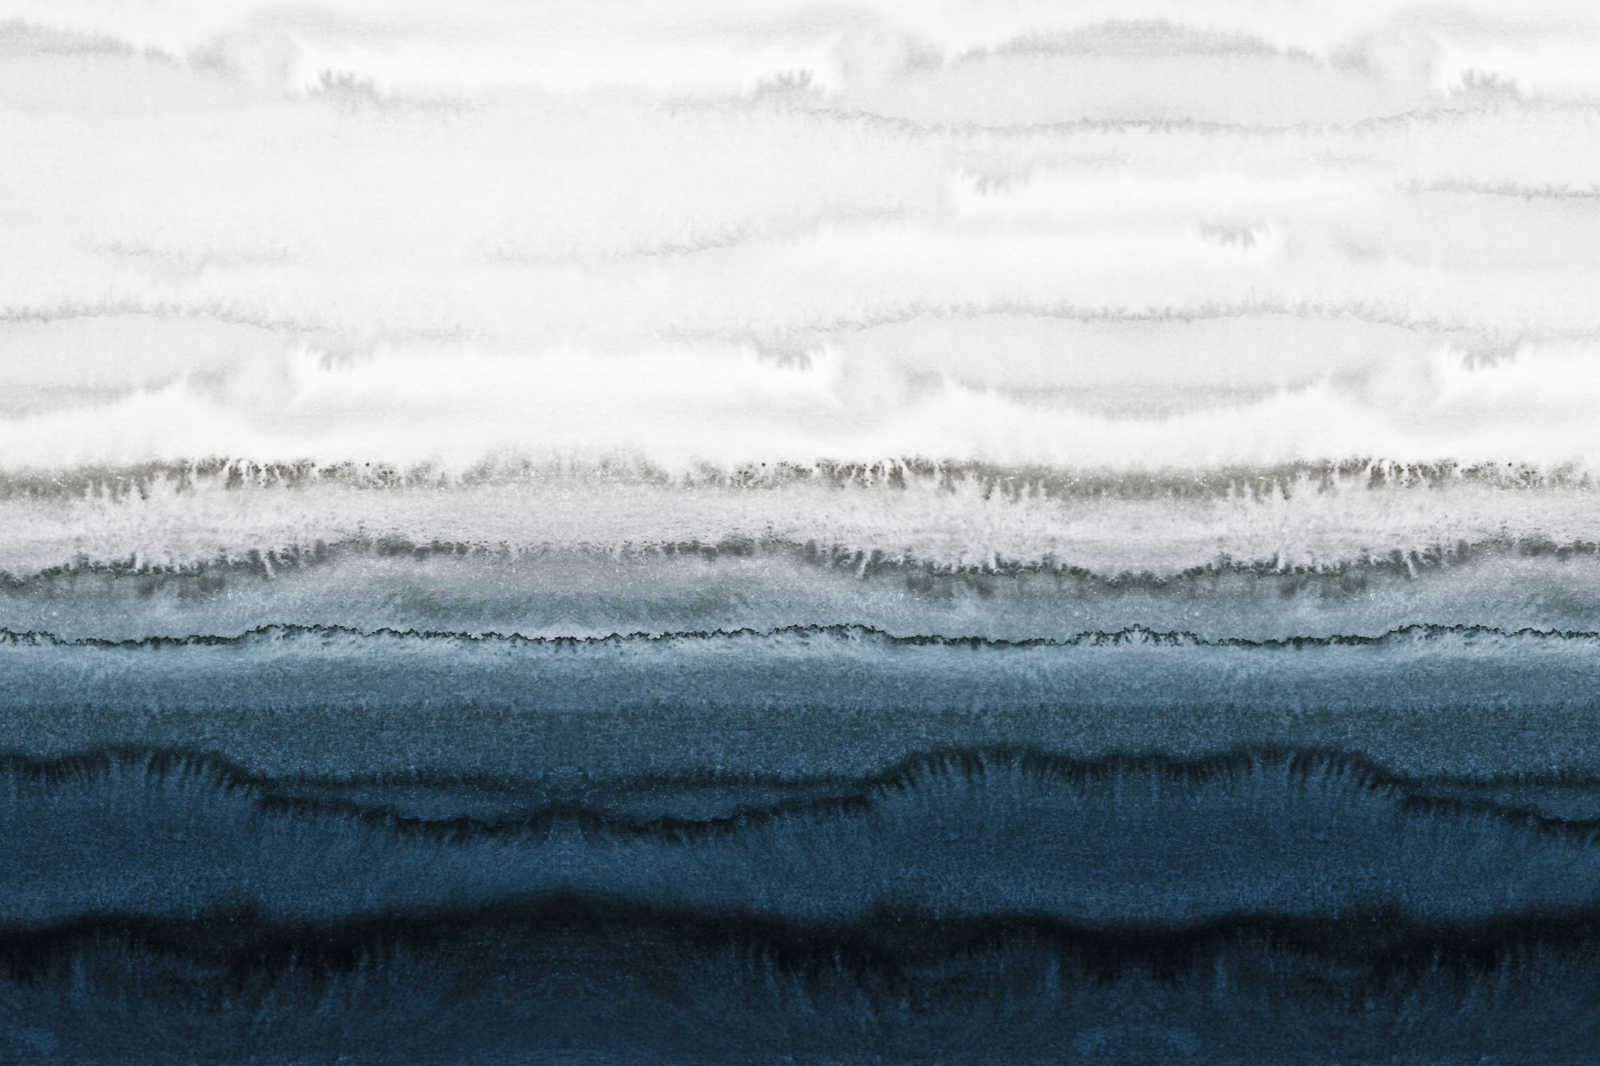             Toile Marées style aquarelle minimaliste - 0,90 m x 0,60 m
        